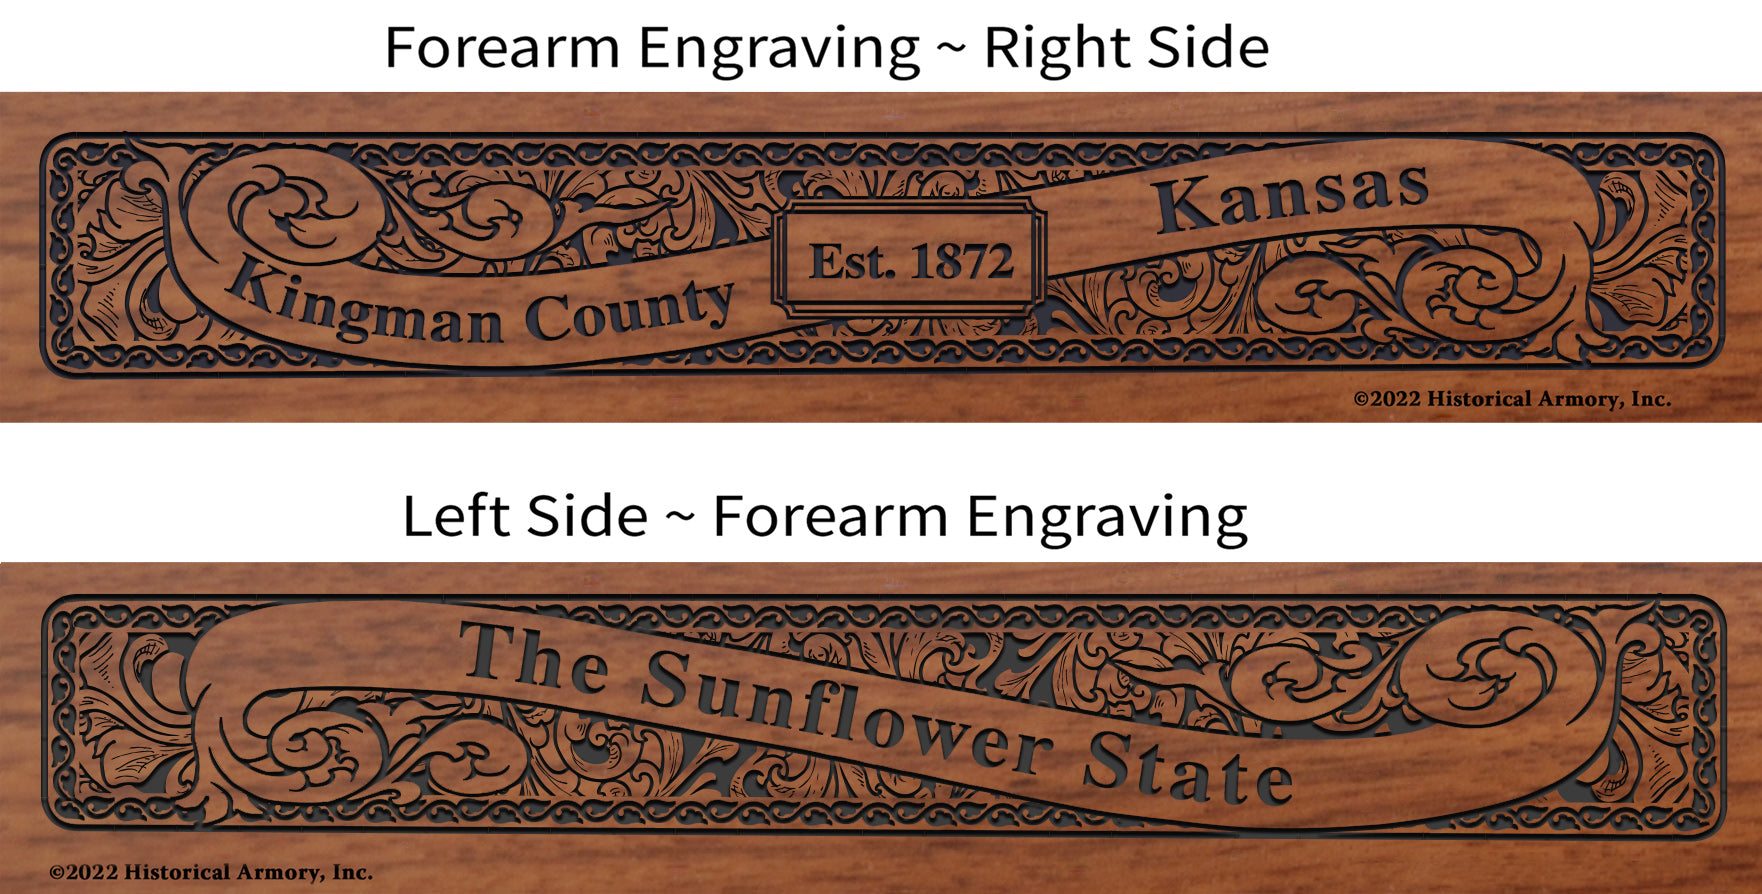 Kingman County Kansas Engraved Rifle Forearm